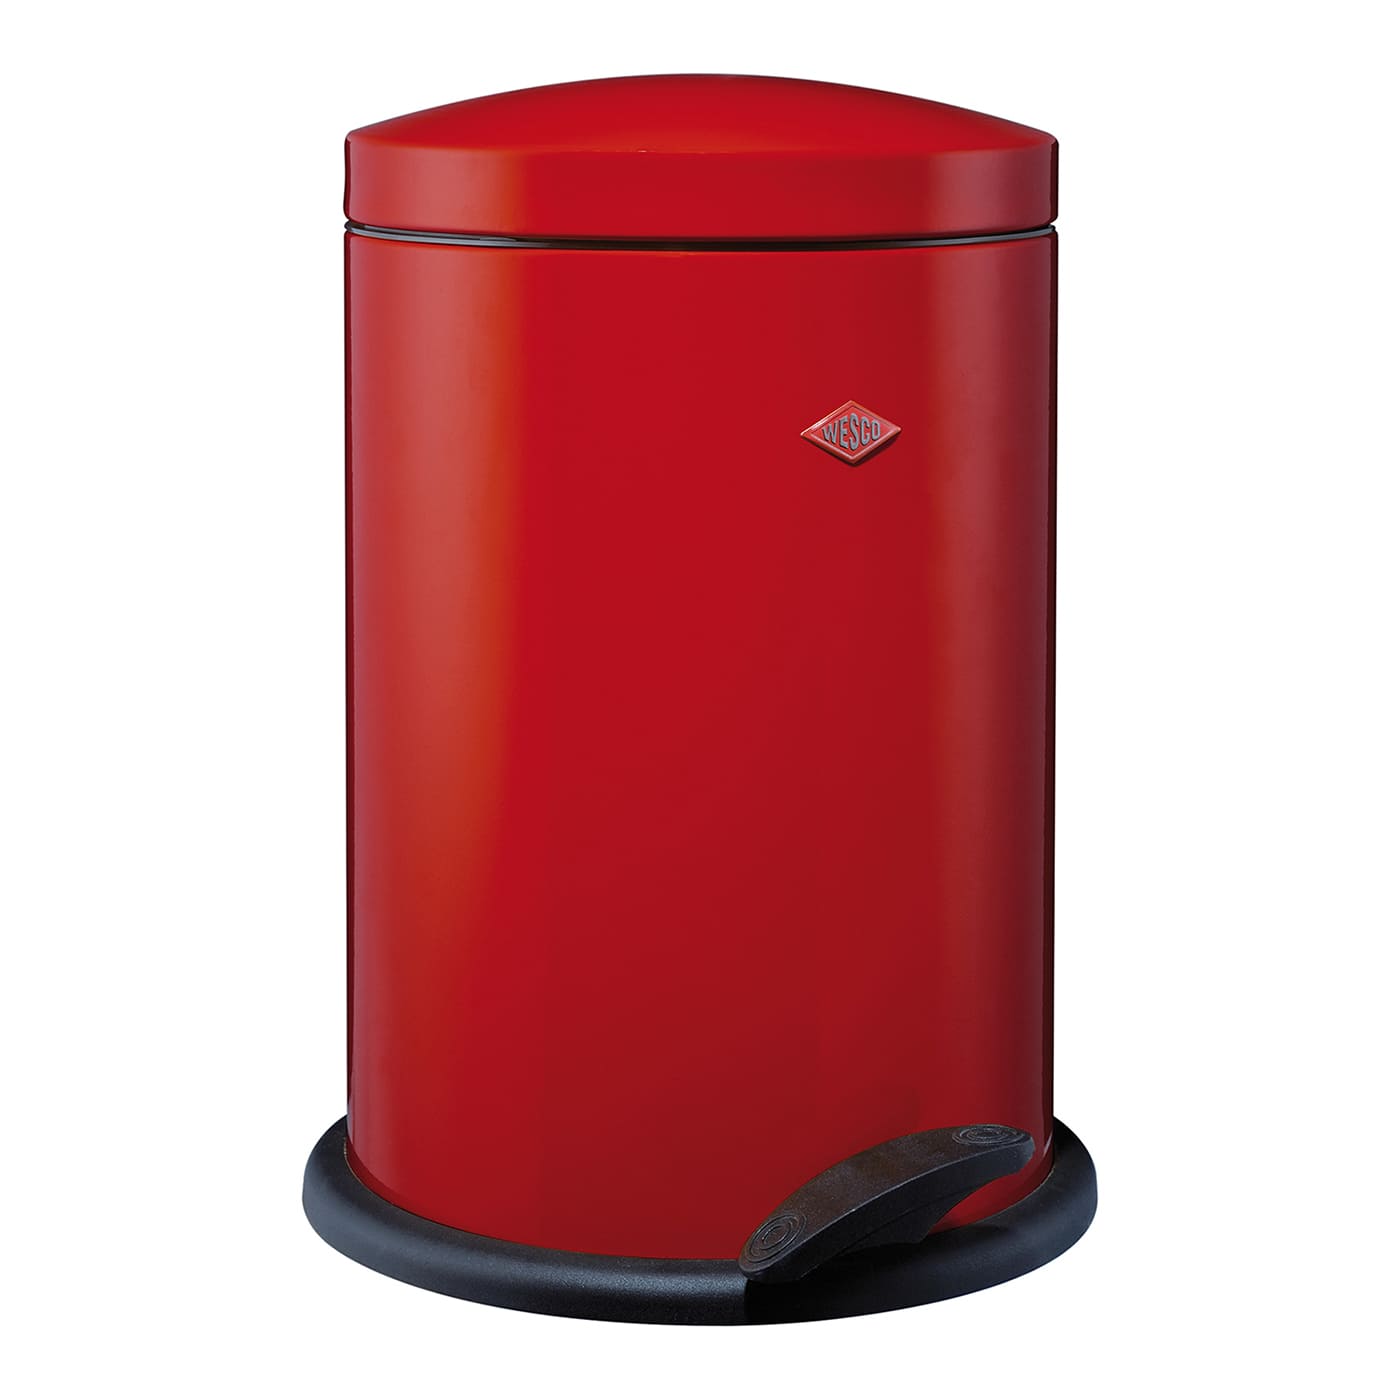 Runder Mülleimer mit Fusstritt in der Farbe Rot